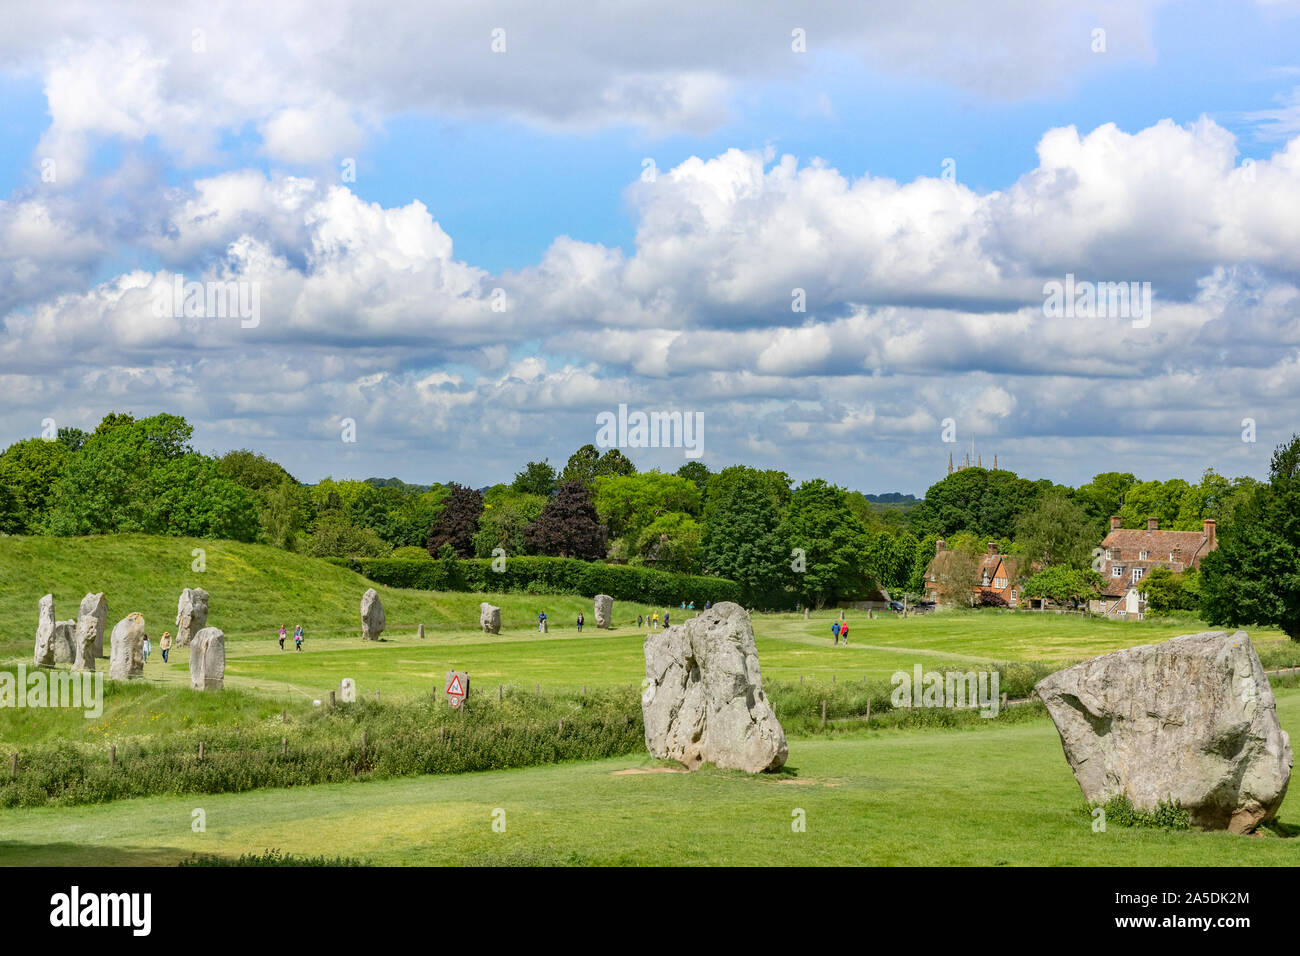 8 Giugno 2019: Avebury, Wiltshire, Regno Unito - i turisti passeggiano attorno all'Avebury Stone Circle, il più grande henge in nworld, su un luminoso giorno d'estate. Foto Stock